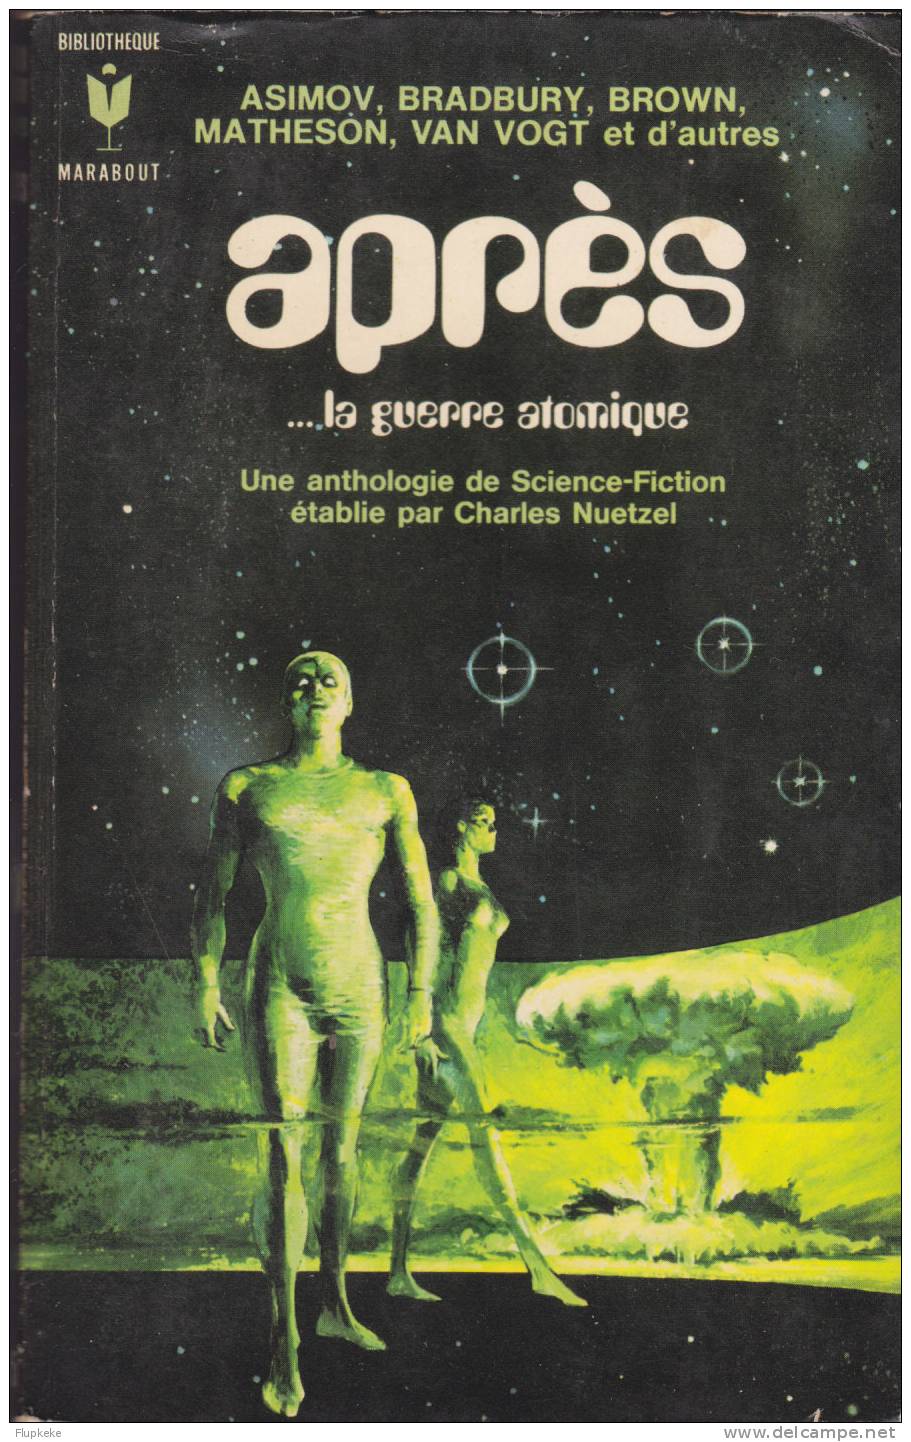 Bibliothèque Marabout 345 Après...la Guerre Atomique Asimov Bradbury Brown Matheson Van Vogt...1970 - Marabout SF